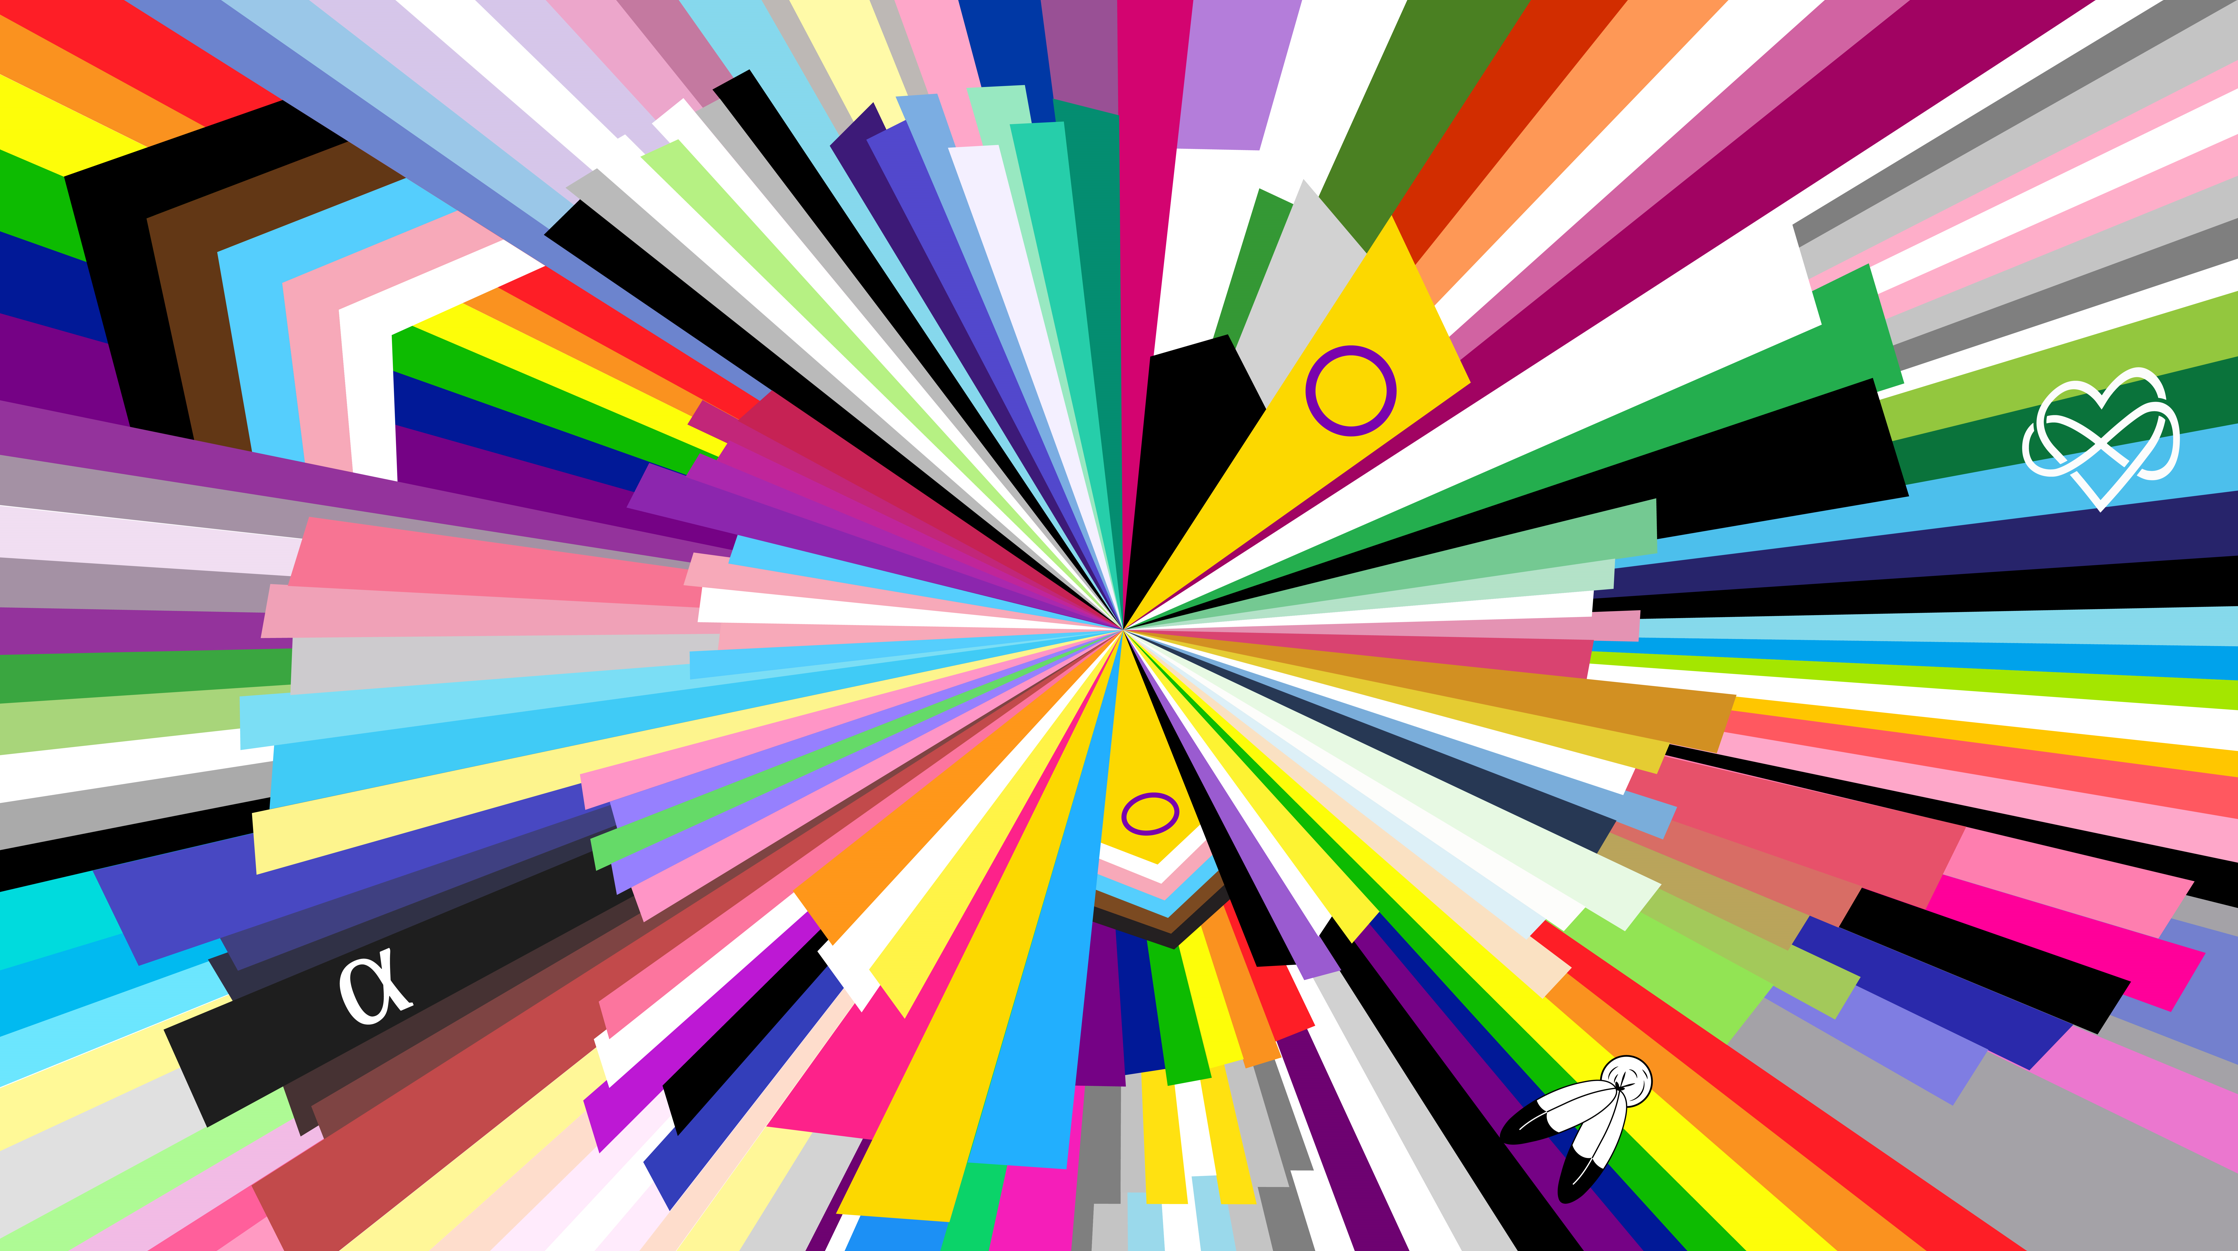 GitHub Pride Flag: Pride Flag Featuring 40 Individual LGBTQIA+ Flags